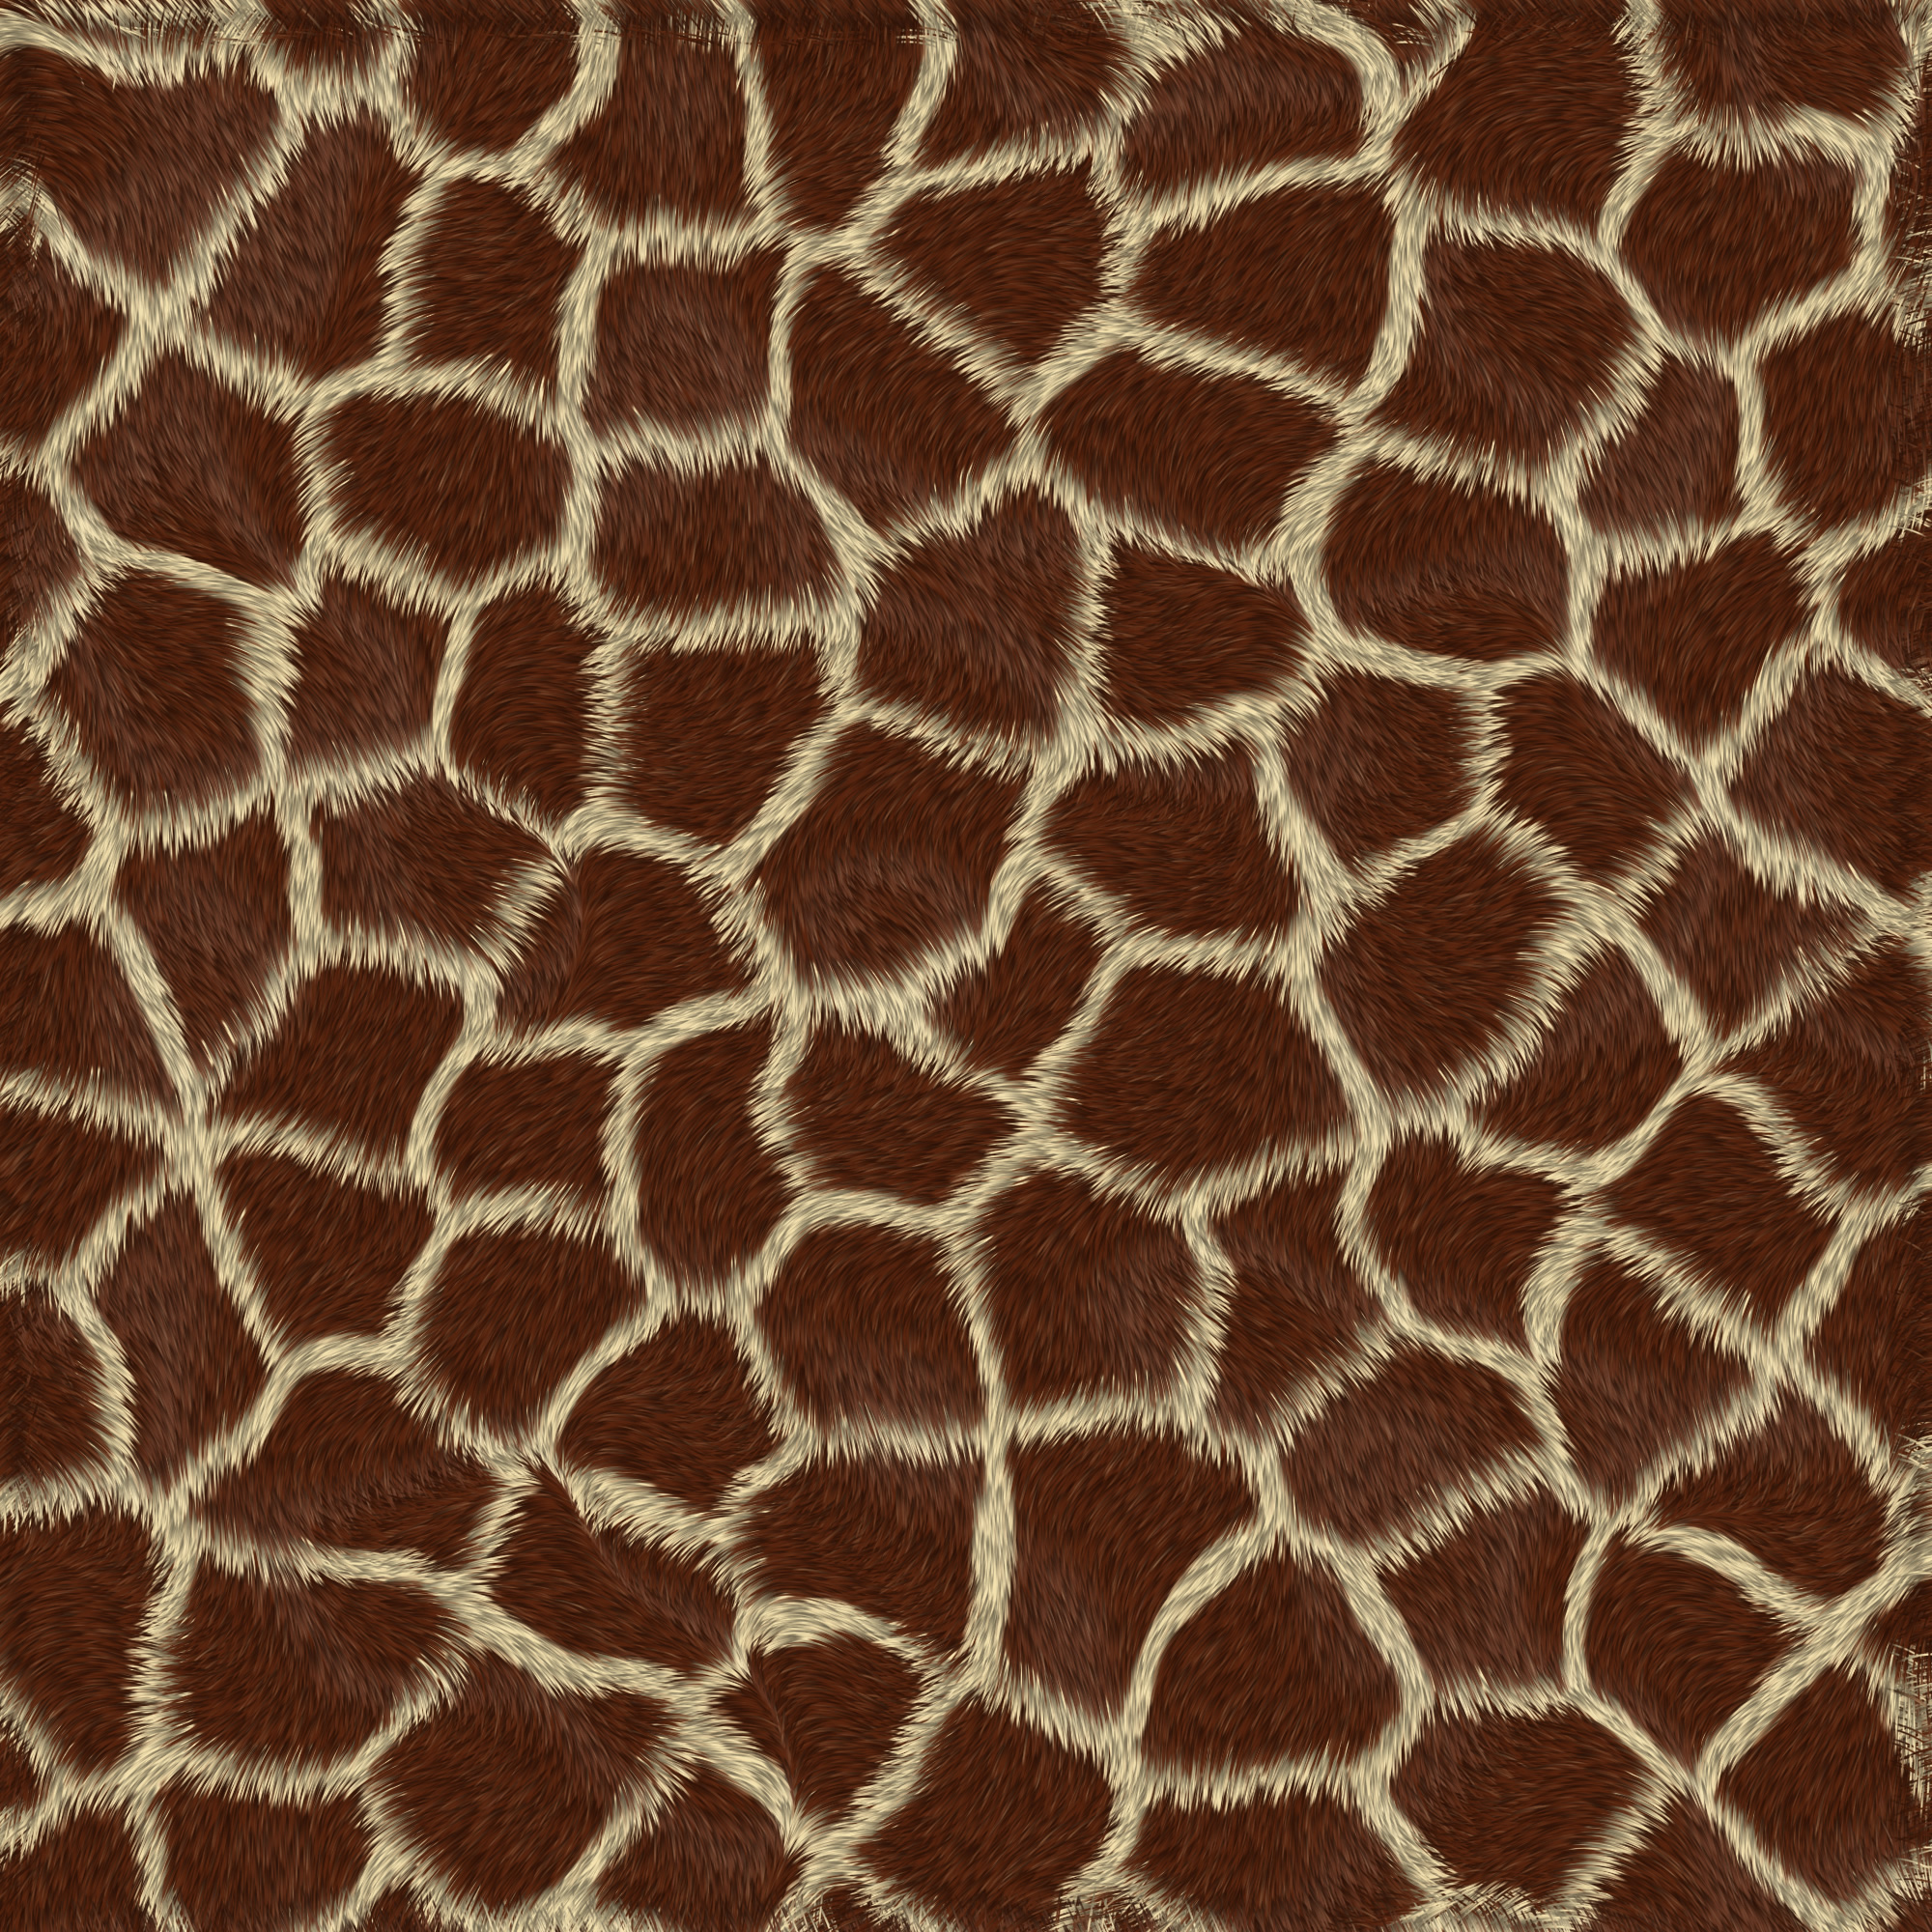 жираф, шкура жирафа, animal texture, background, шкура животного текстура, фон